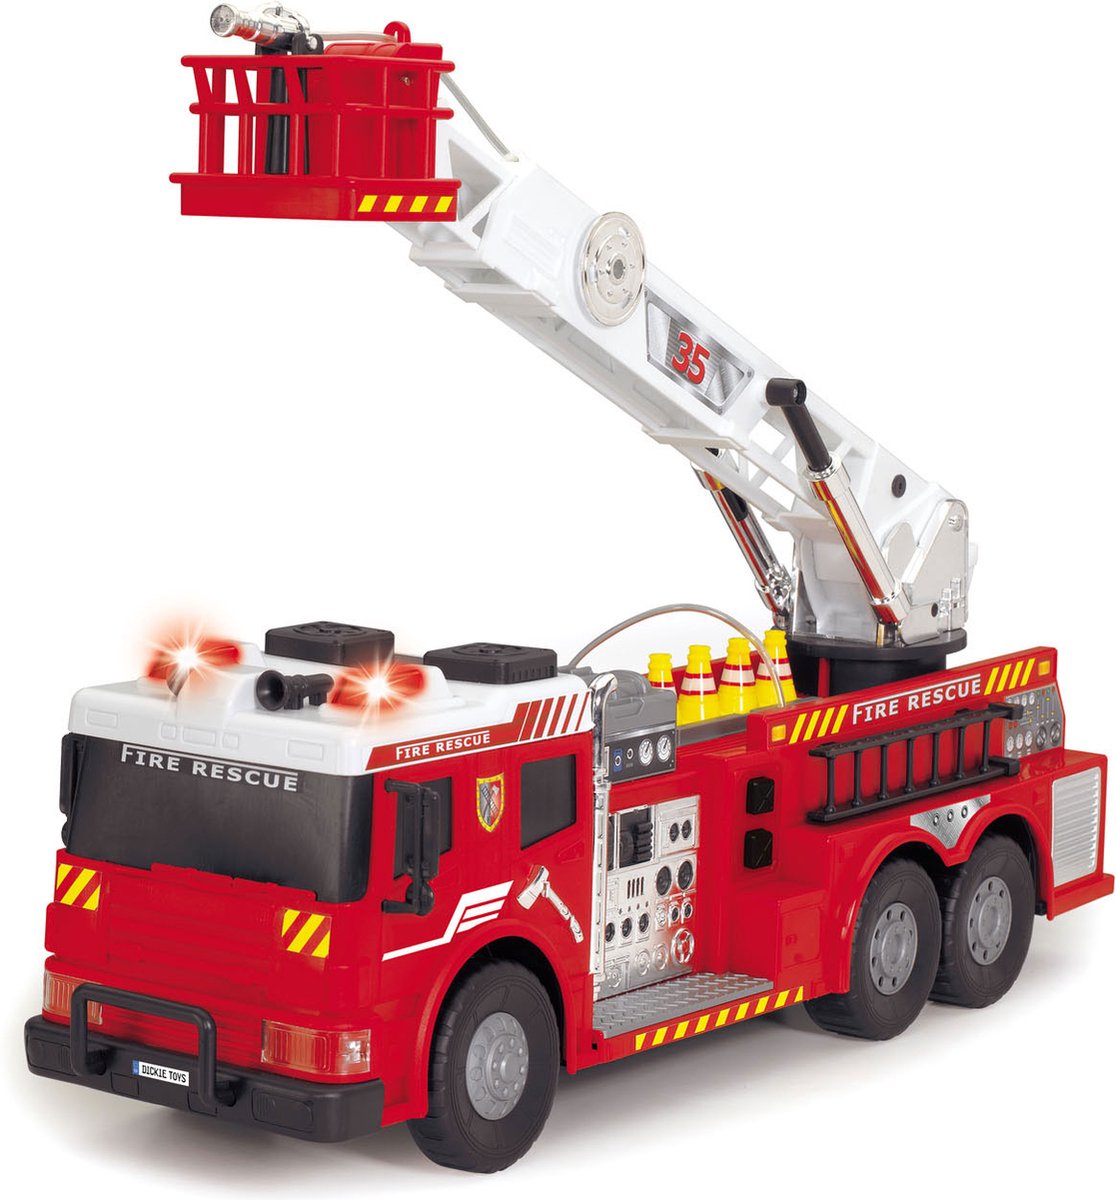 dickie rc brandweerwagen met ladder en waterspuit